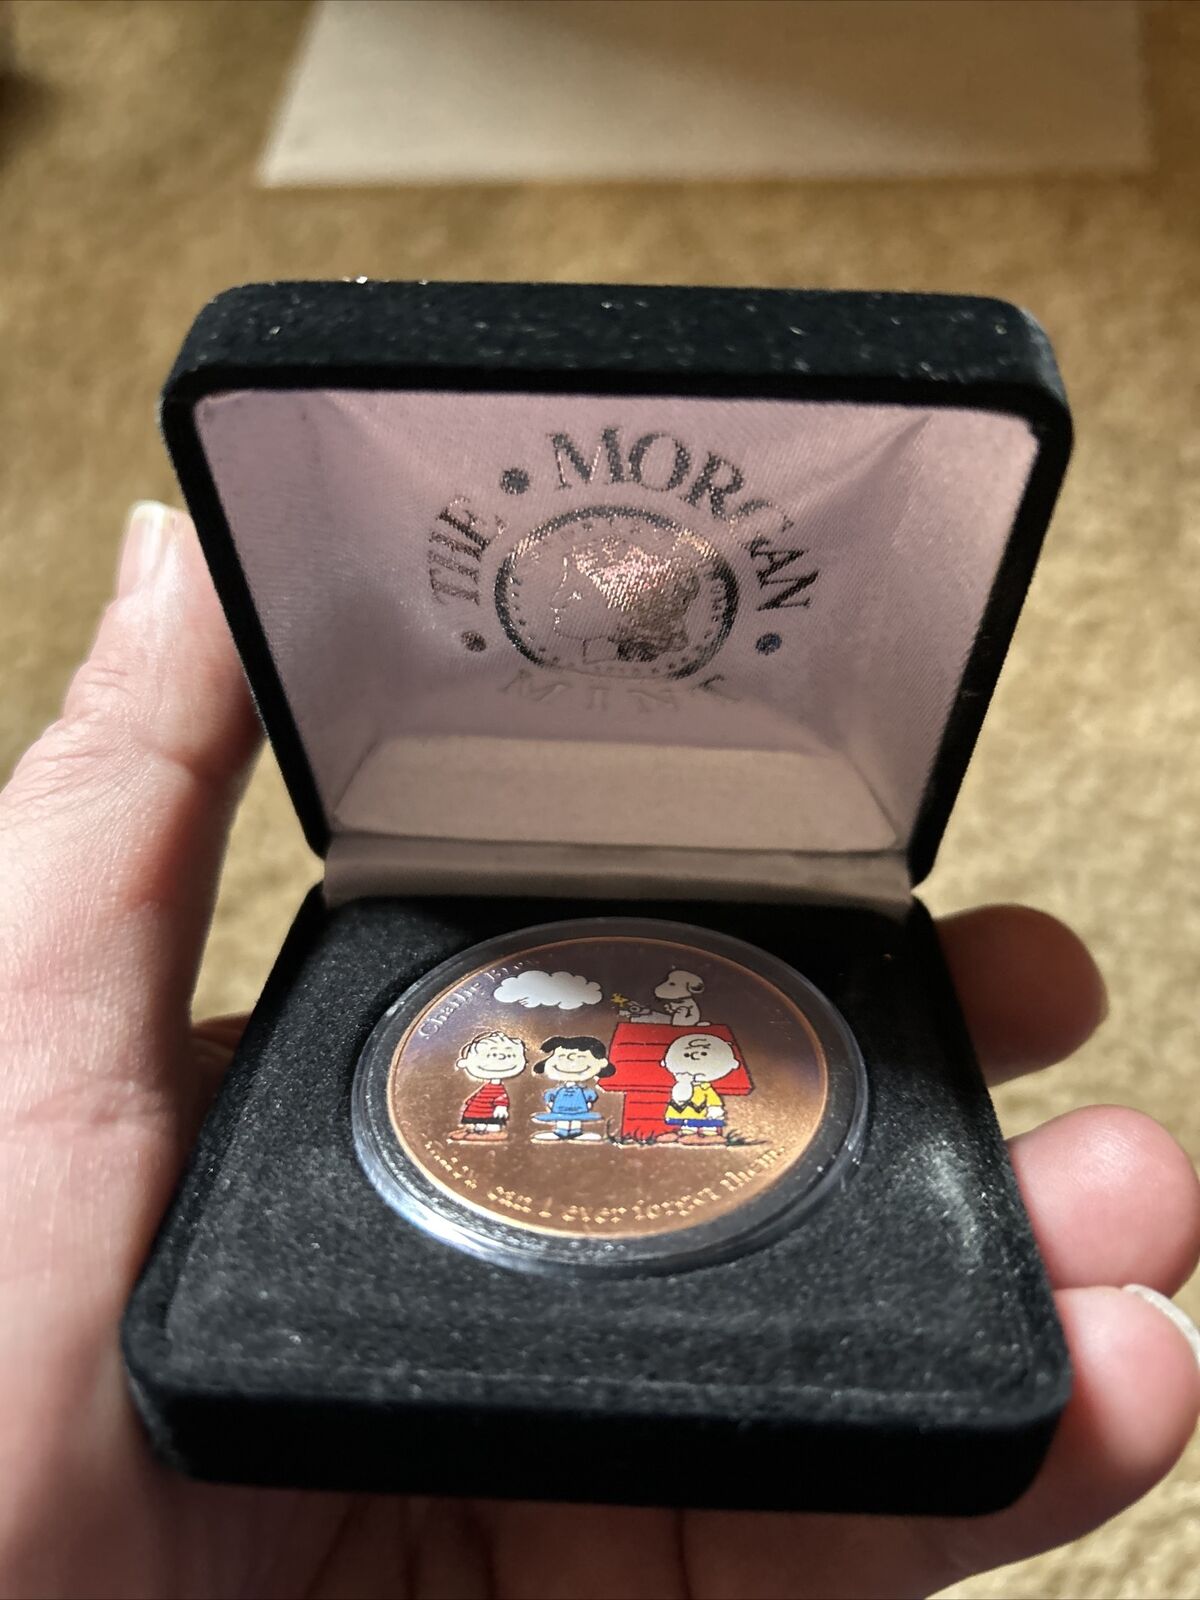 Charles Schulz & Peanuts Gang 2001 Morgan Mint Commemorative Coin-Original Case